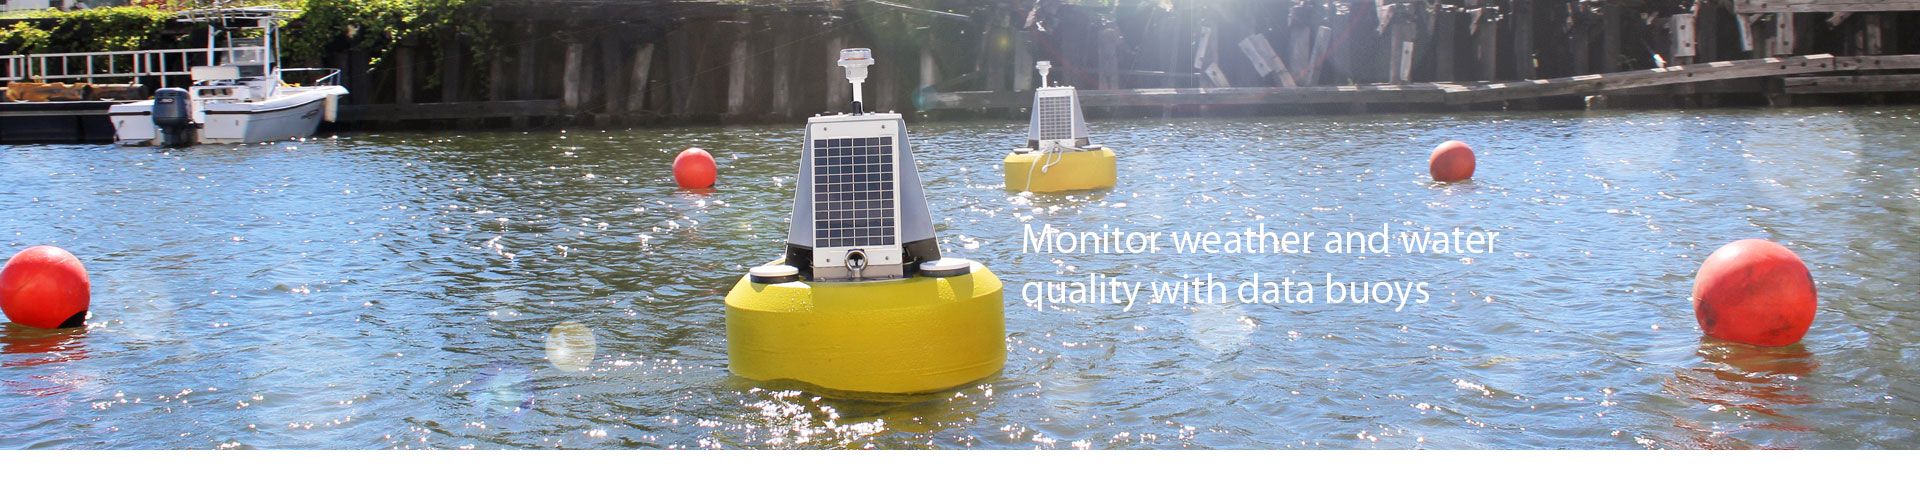 浮標式水質自動監測系統